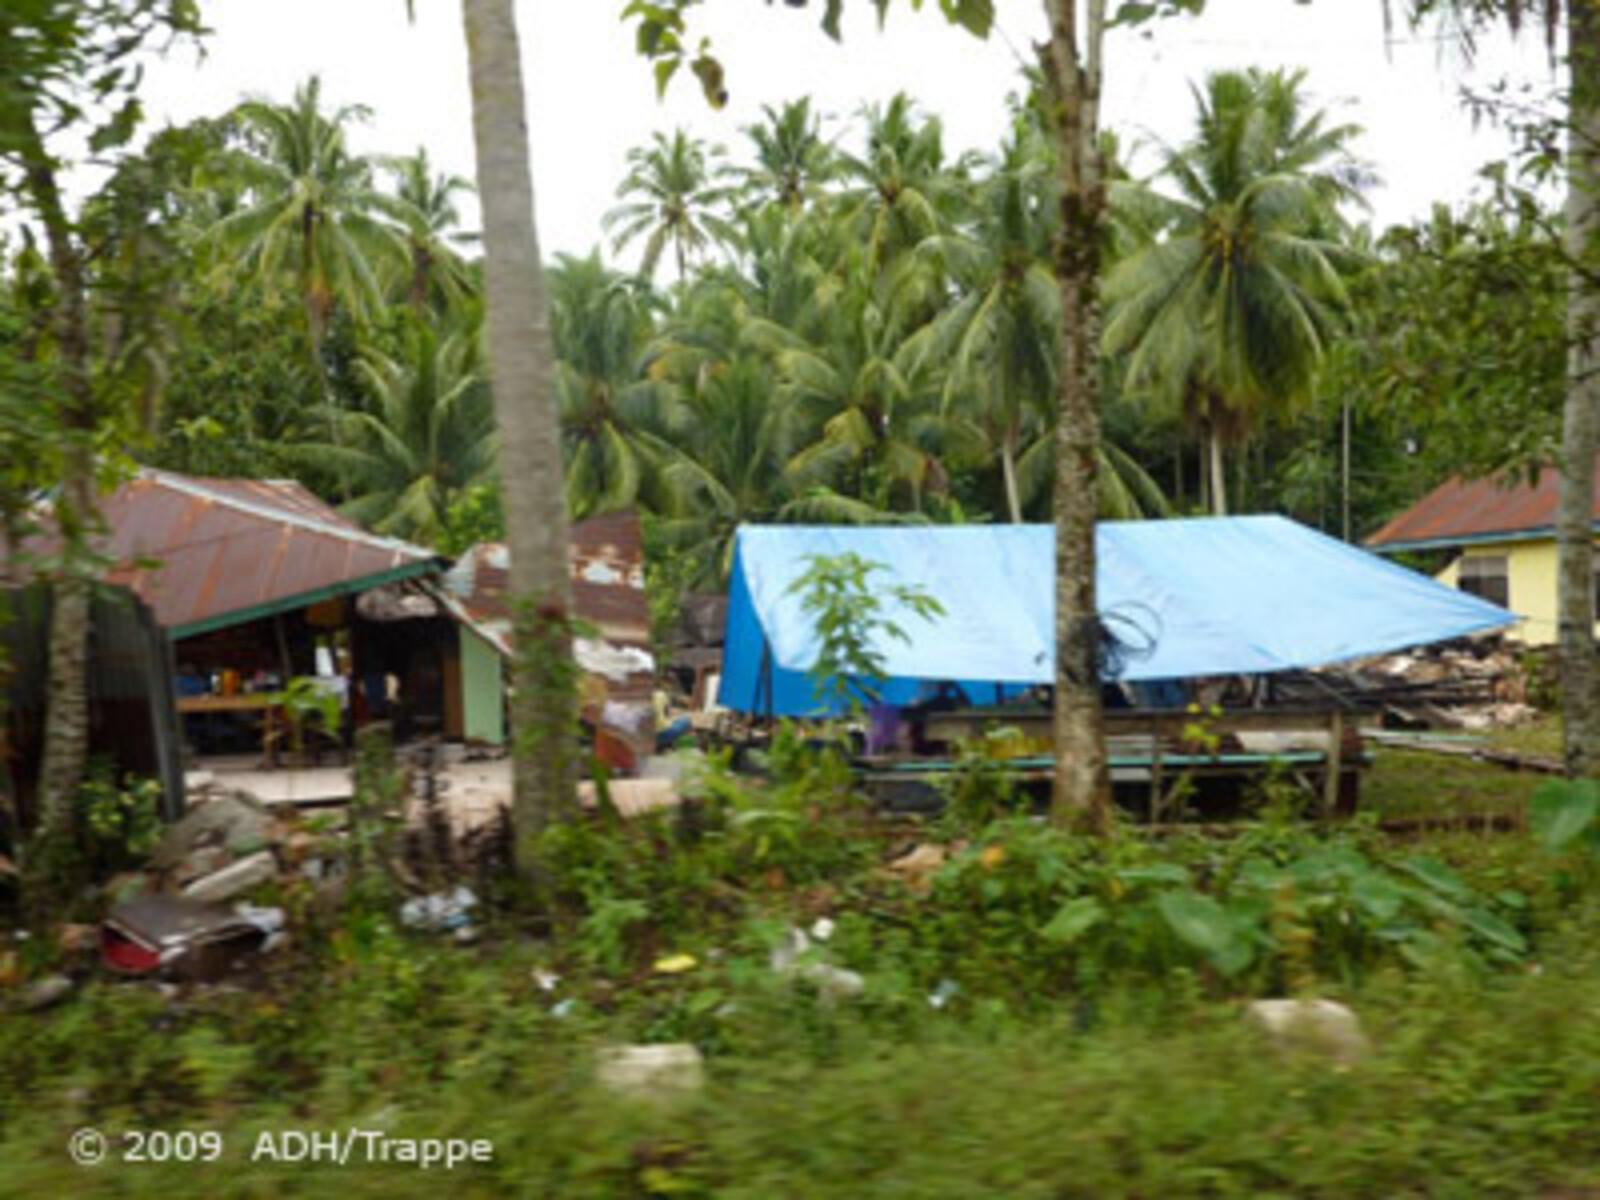 Katastrophen Südostasien: Zeltplane als Notunterkunft